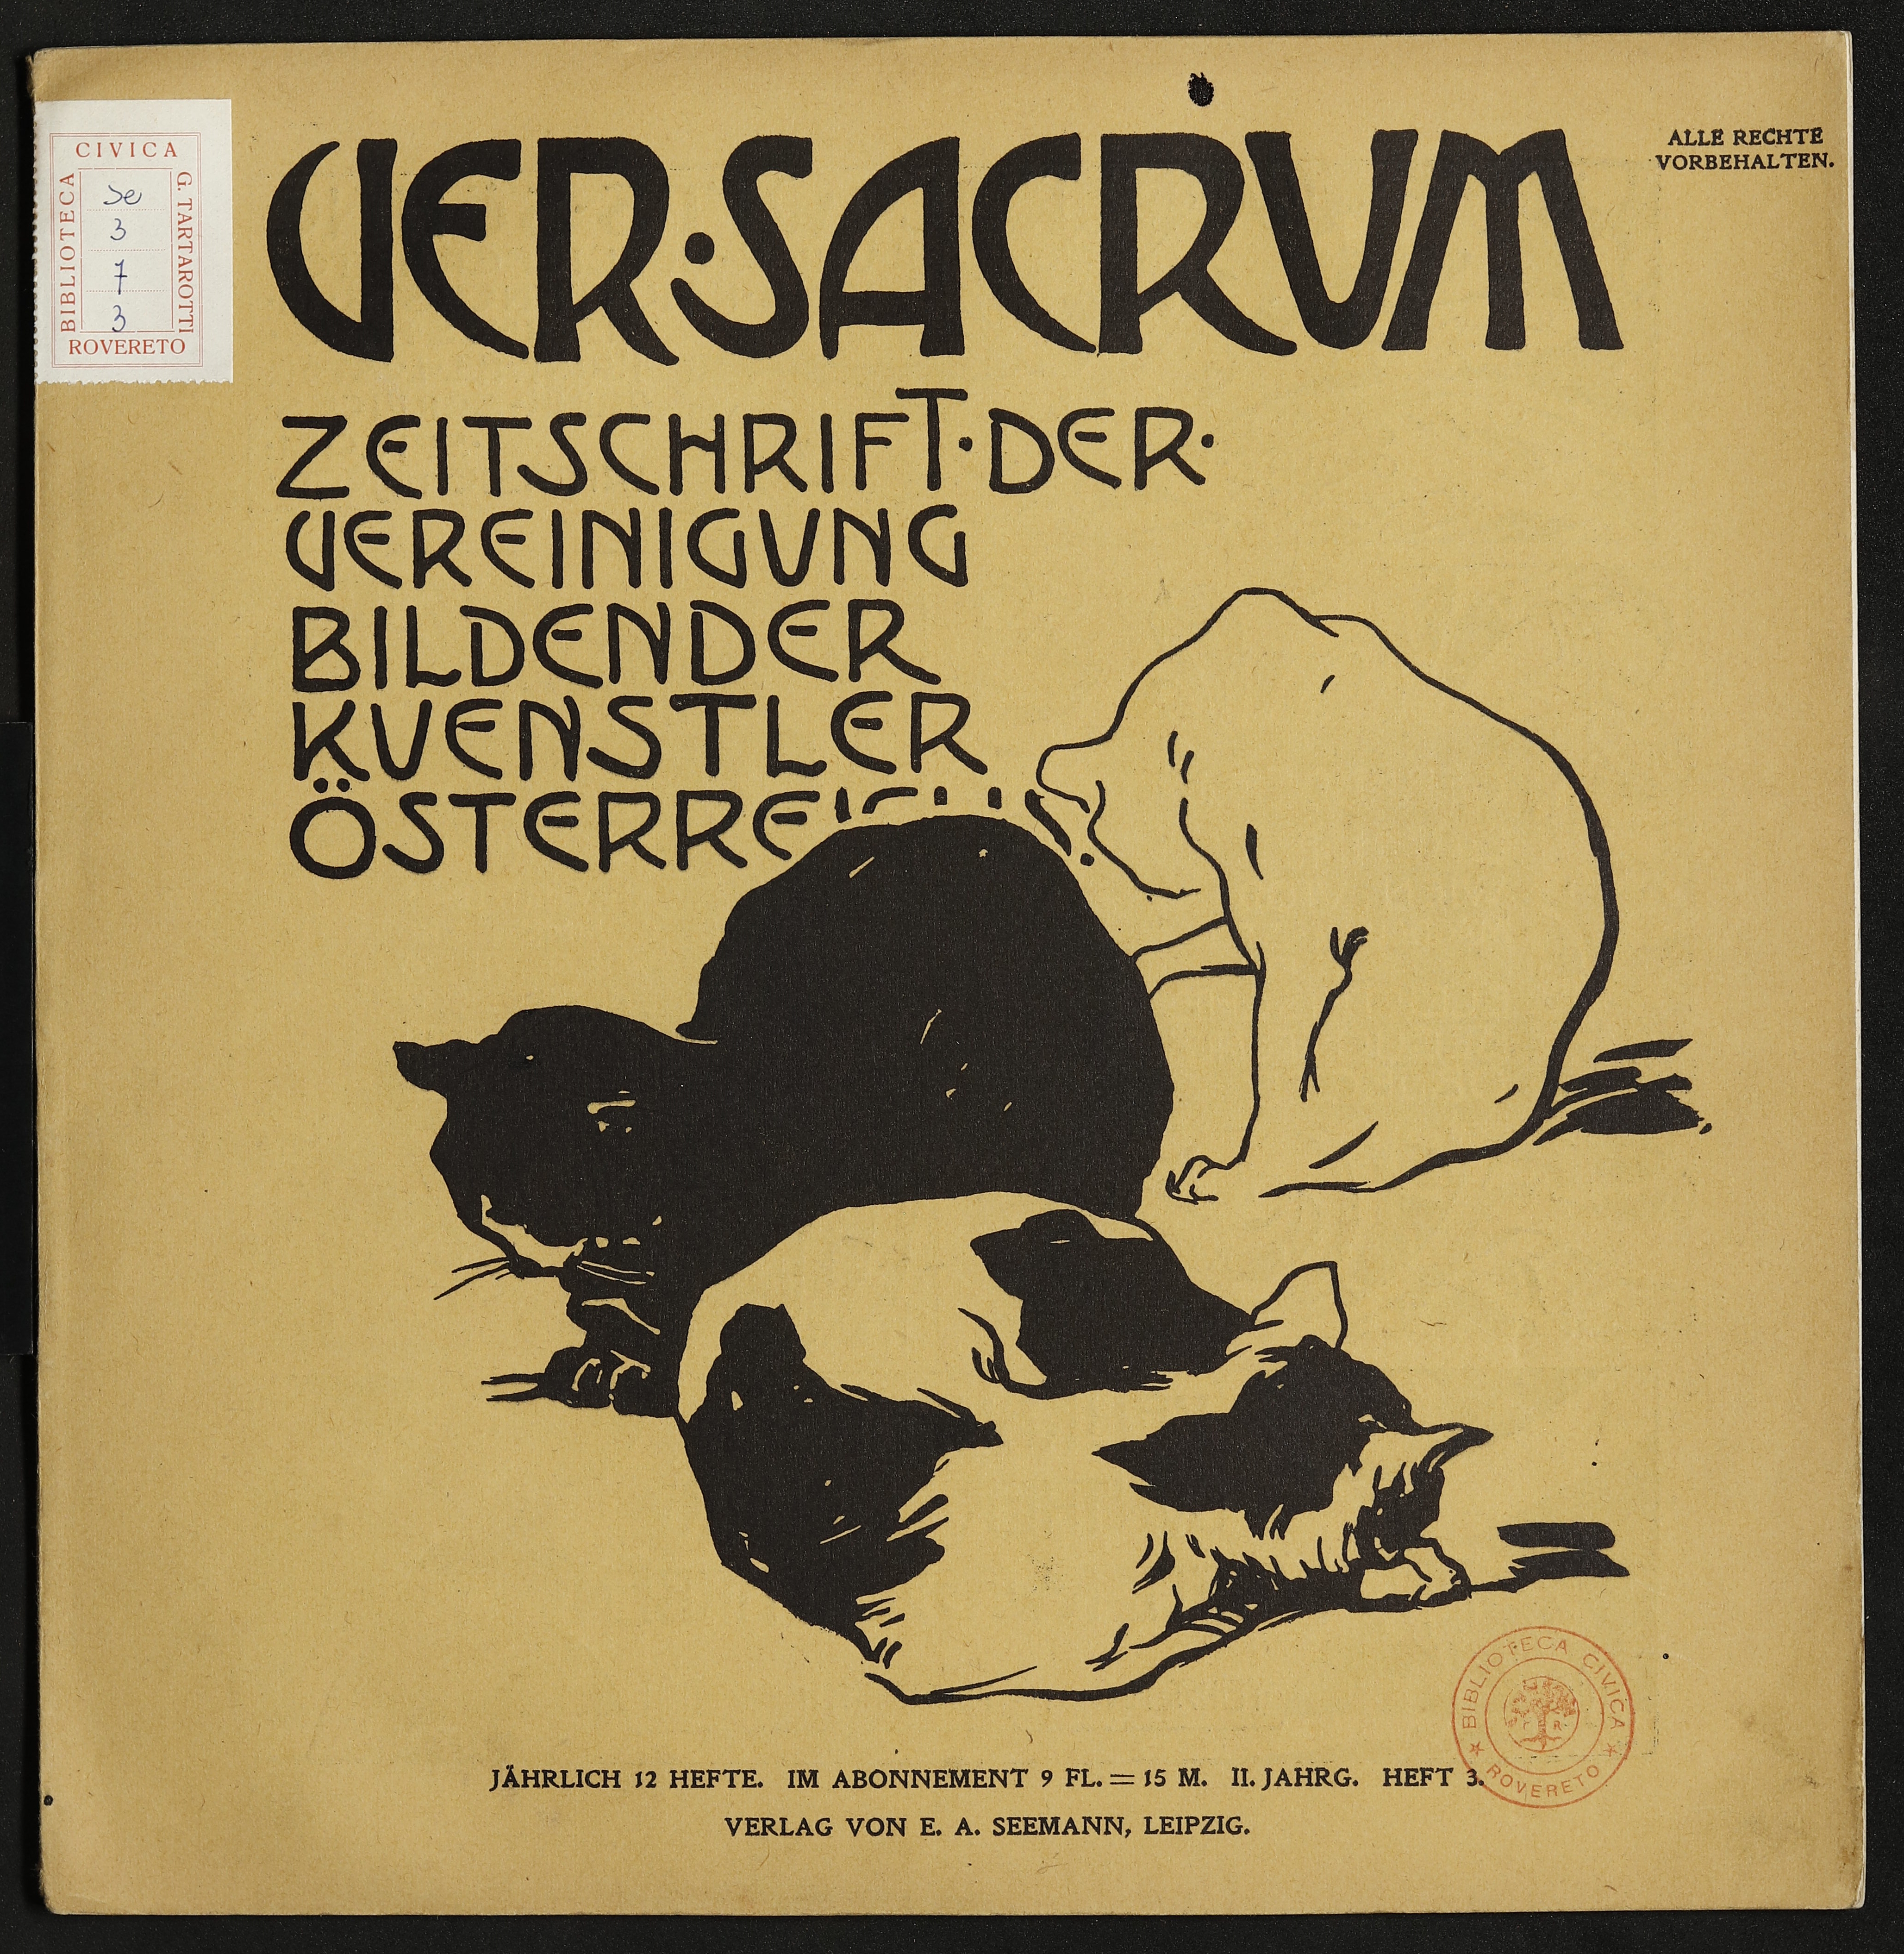 Ver Sacrum – marzo 1899